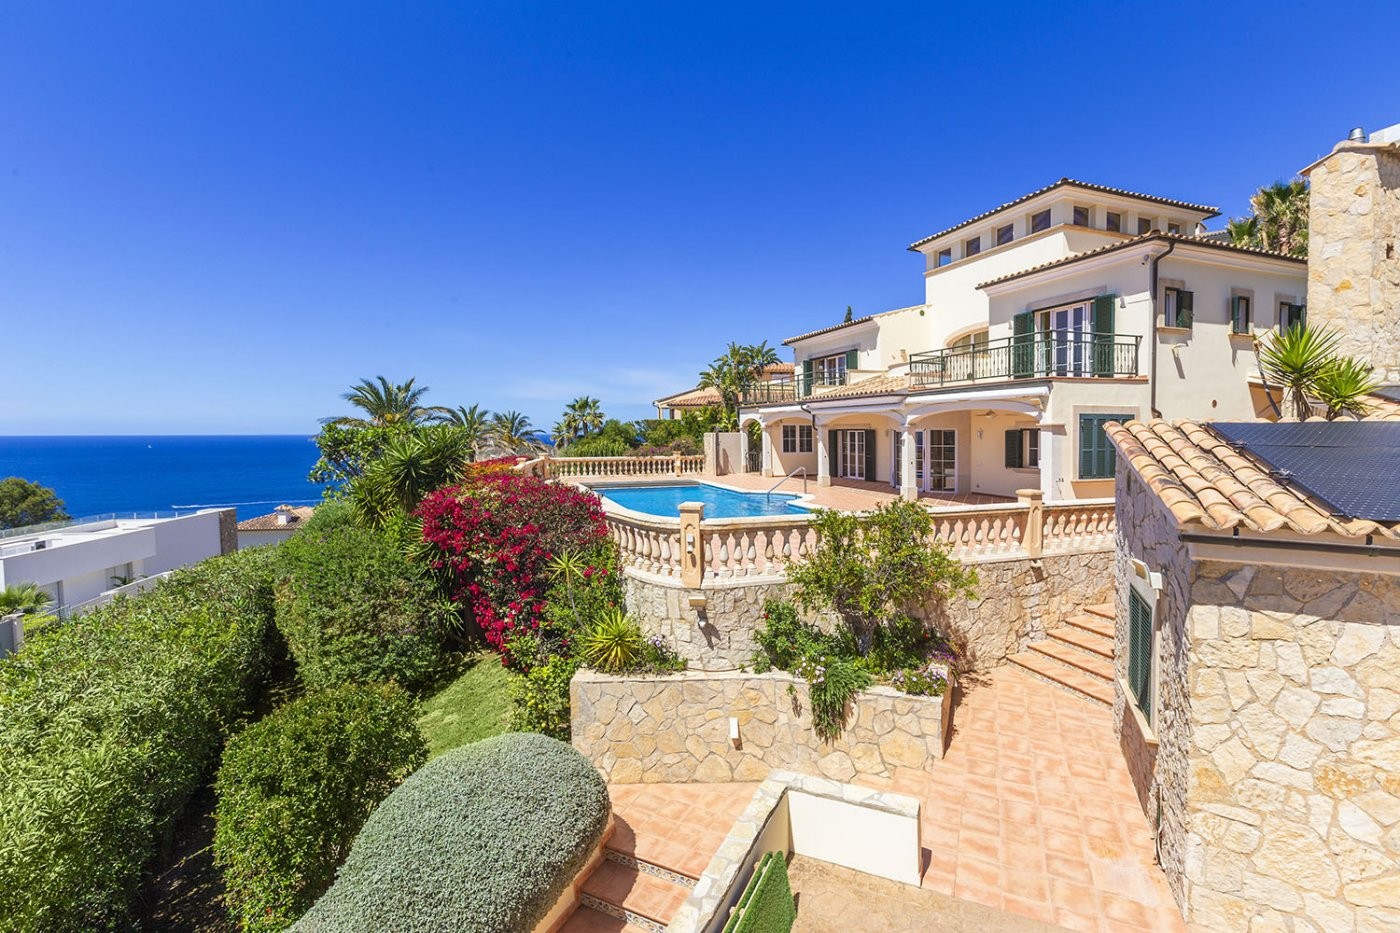 Villa de estilo mediterraneo con vistas espectaculares al mar y al paisaje en Santa Ponsa